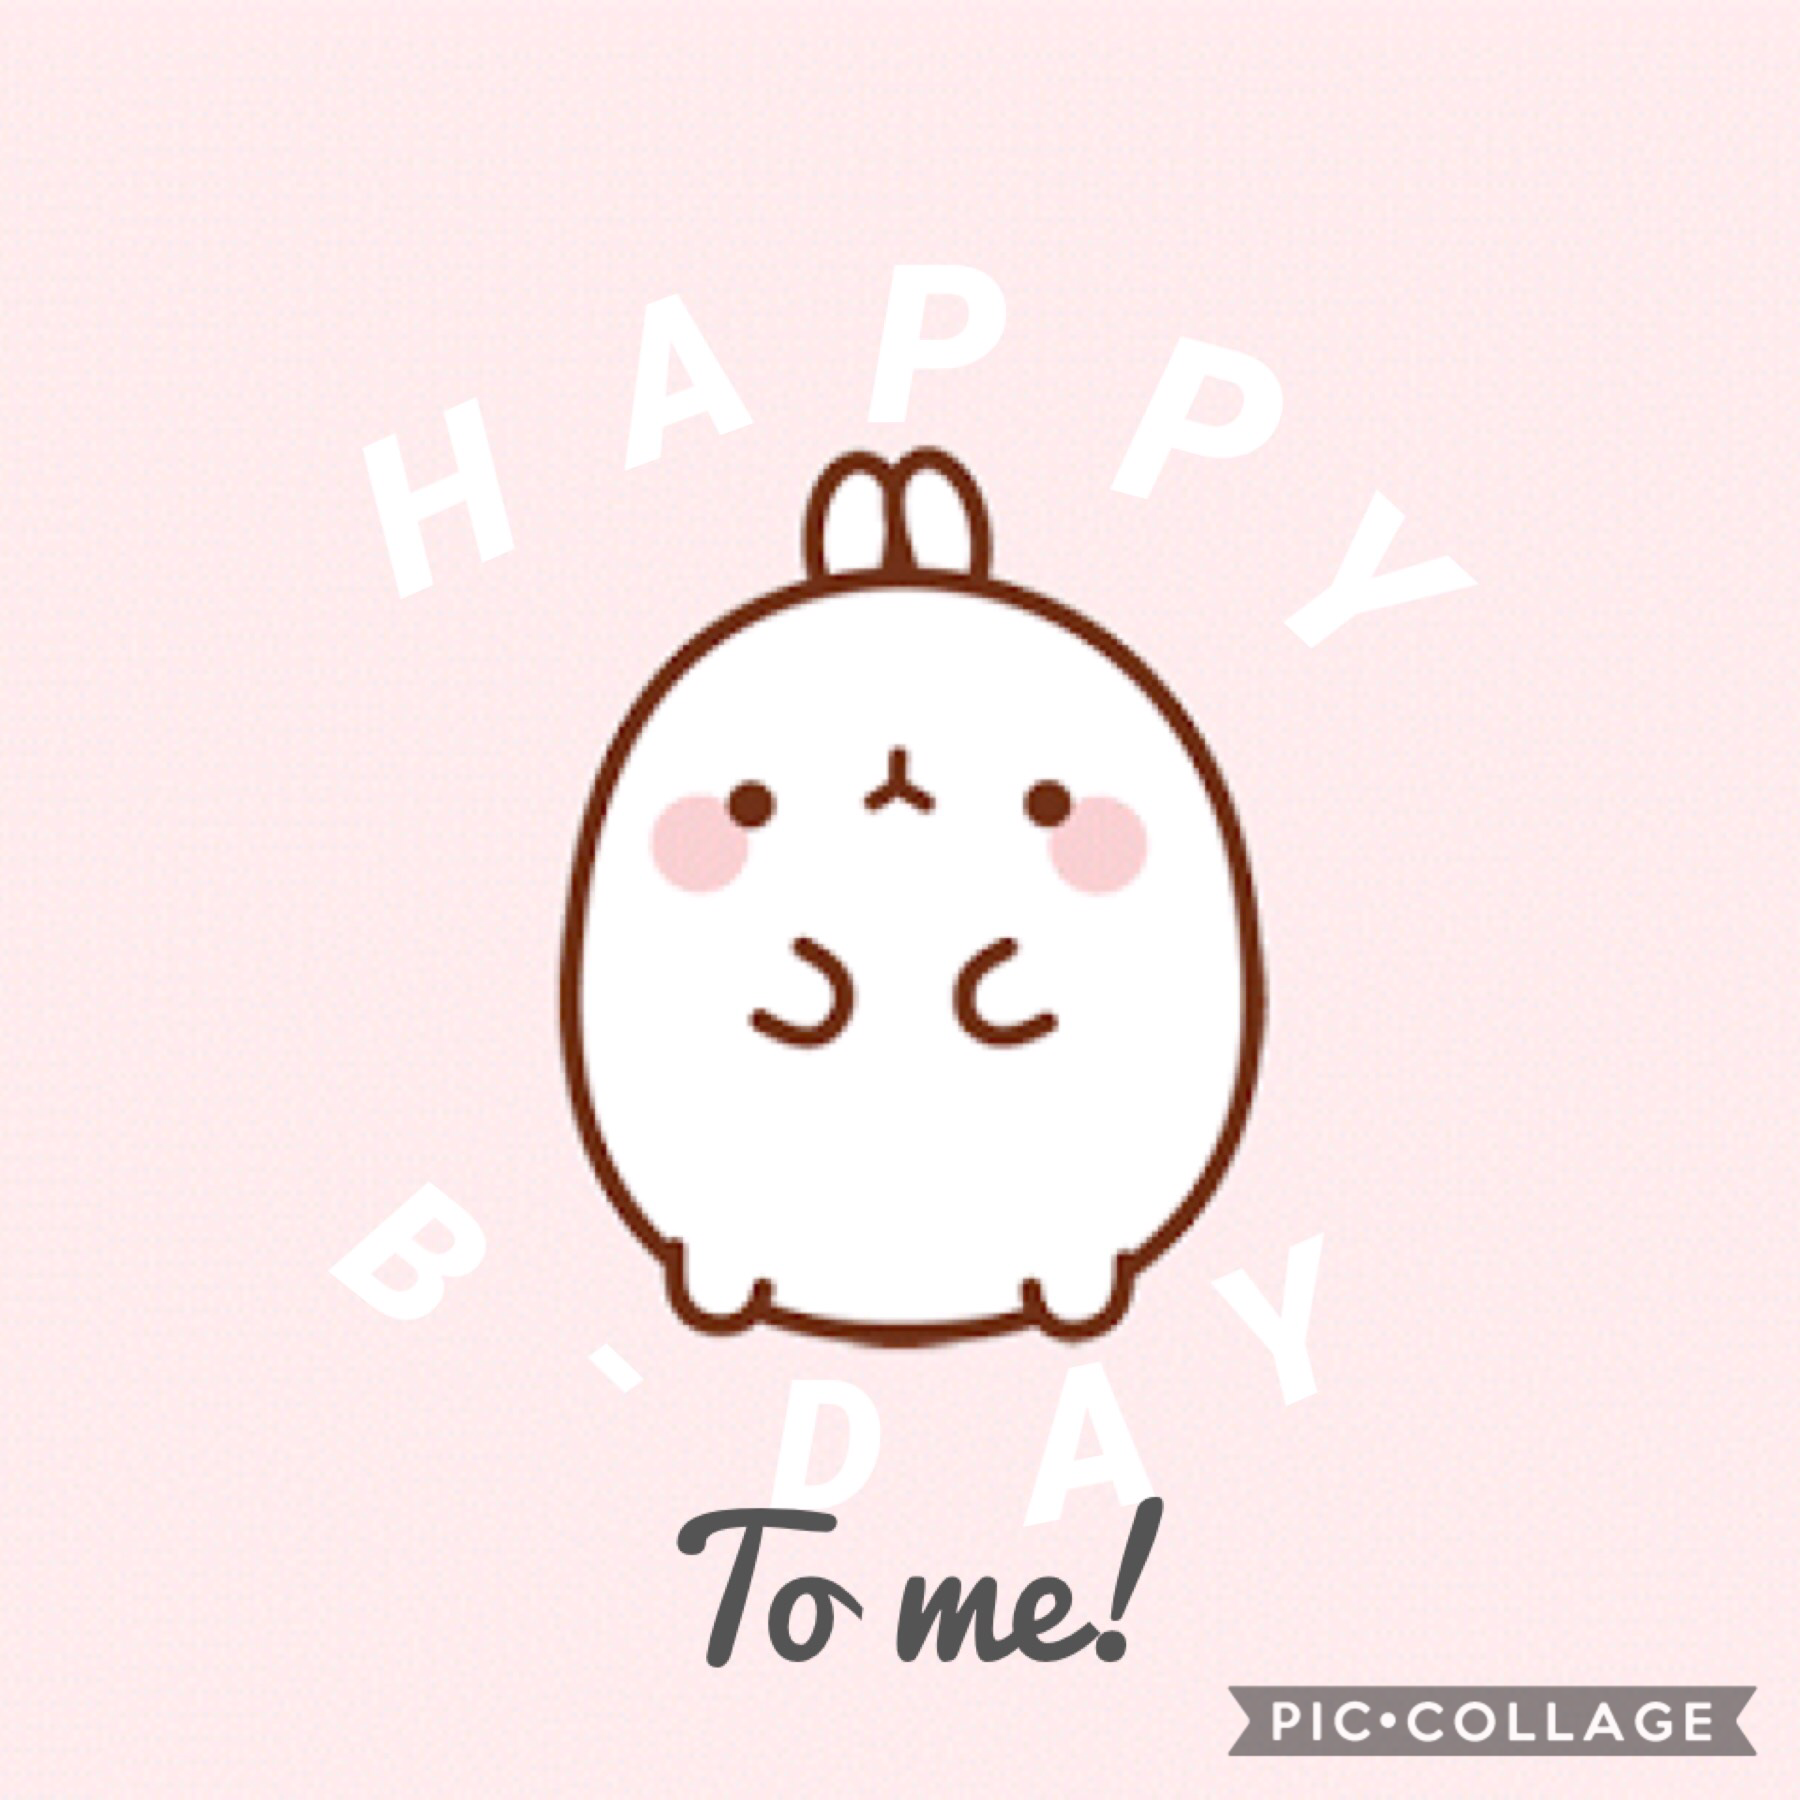 Happy Birthday 2 me!💕